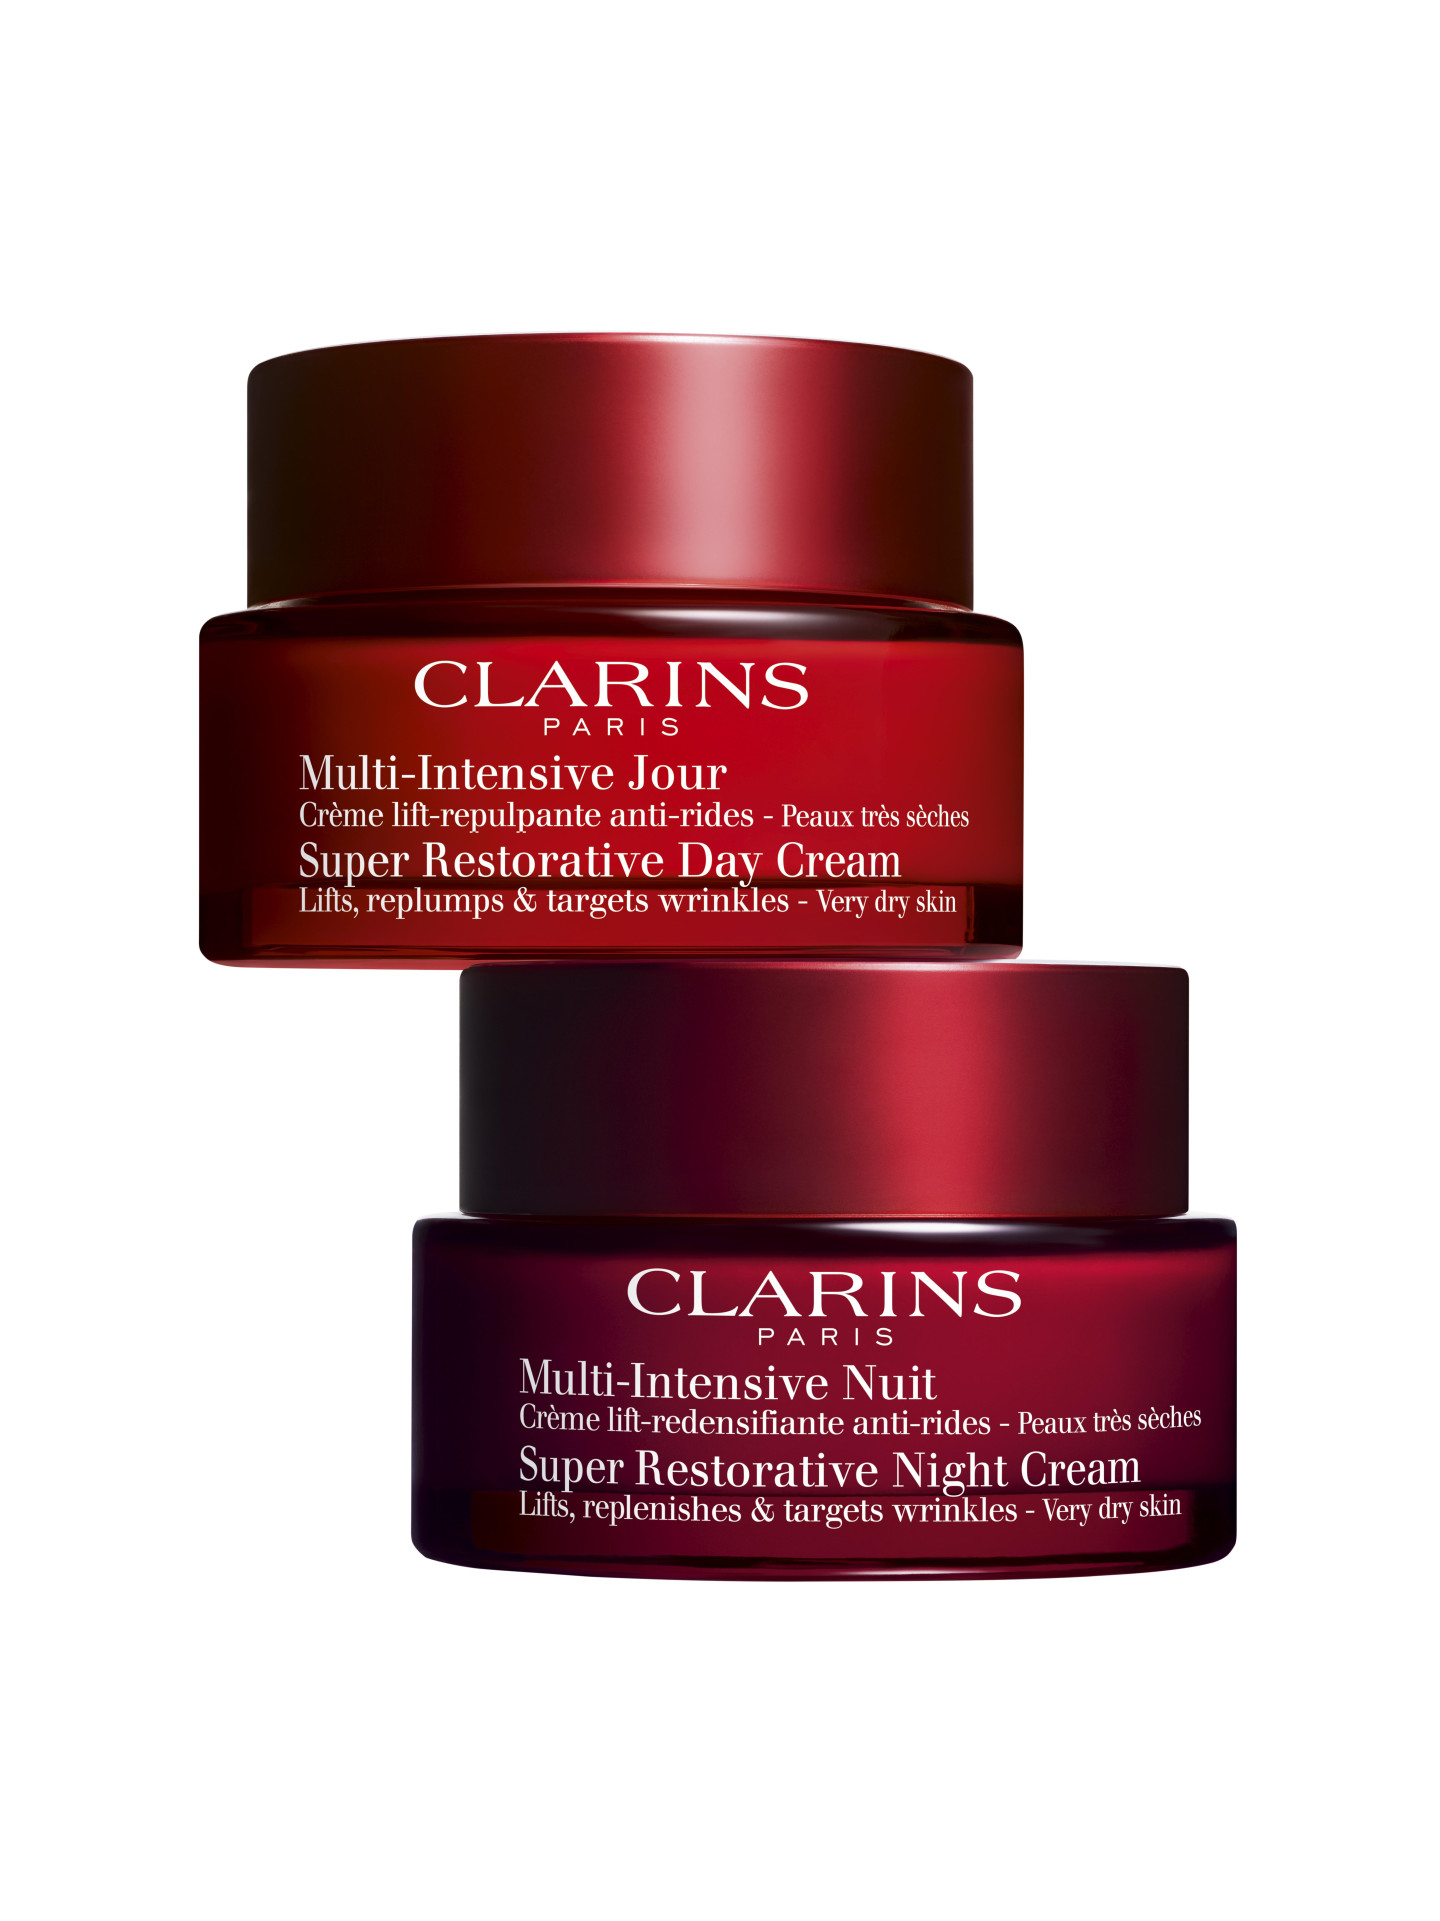 Восстанавливающие дневной и ночной кремы Multi-Intensive с эффектом лифтинга для любого типа кожи, Clarins